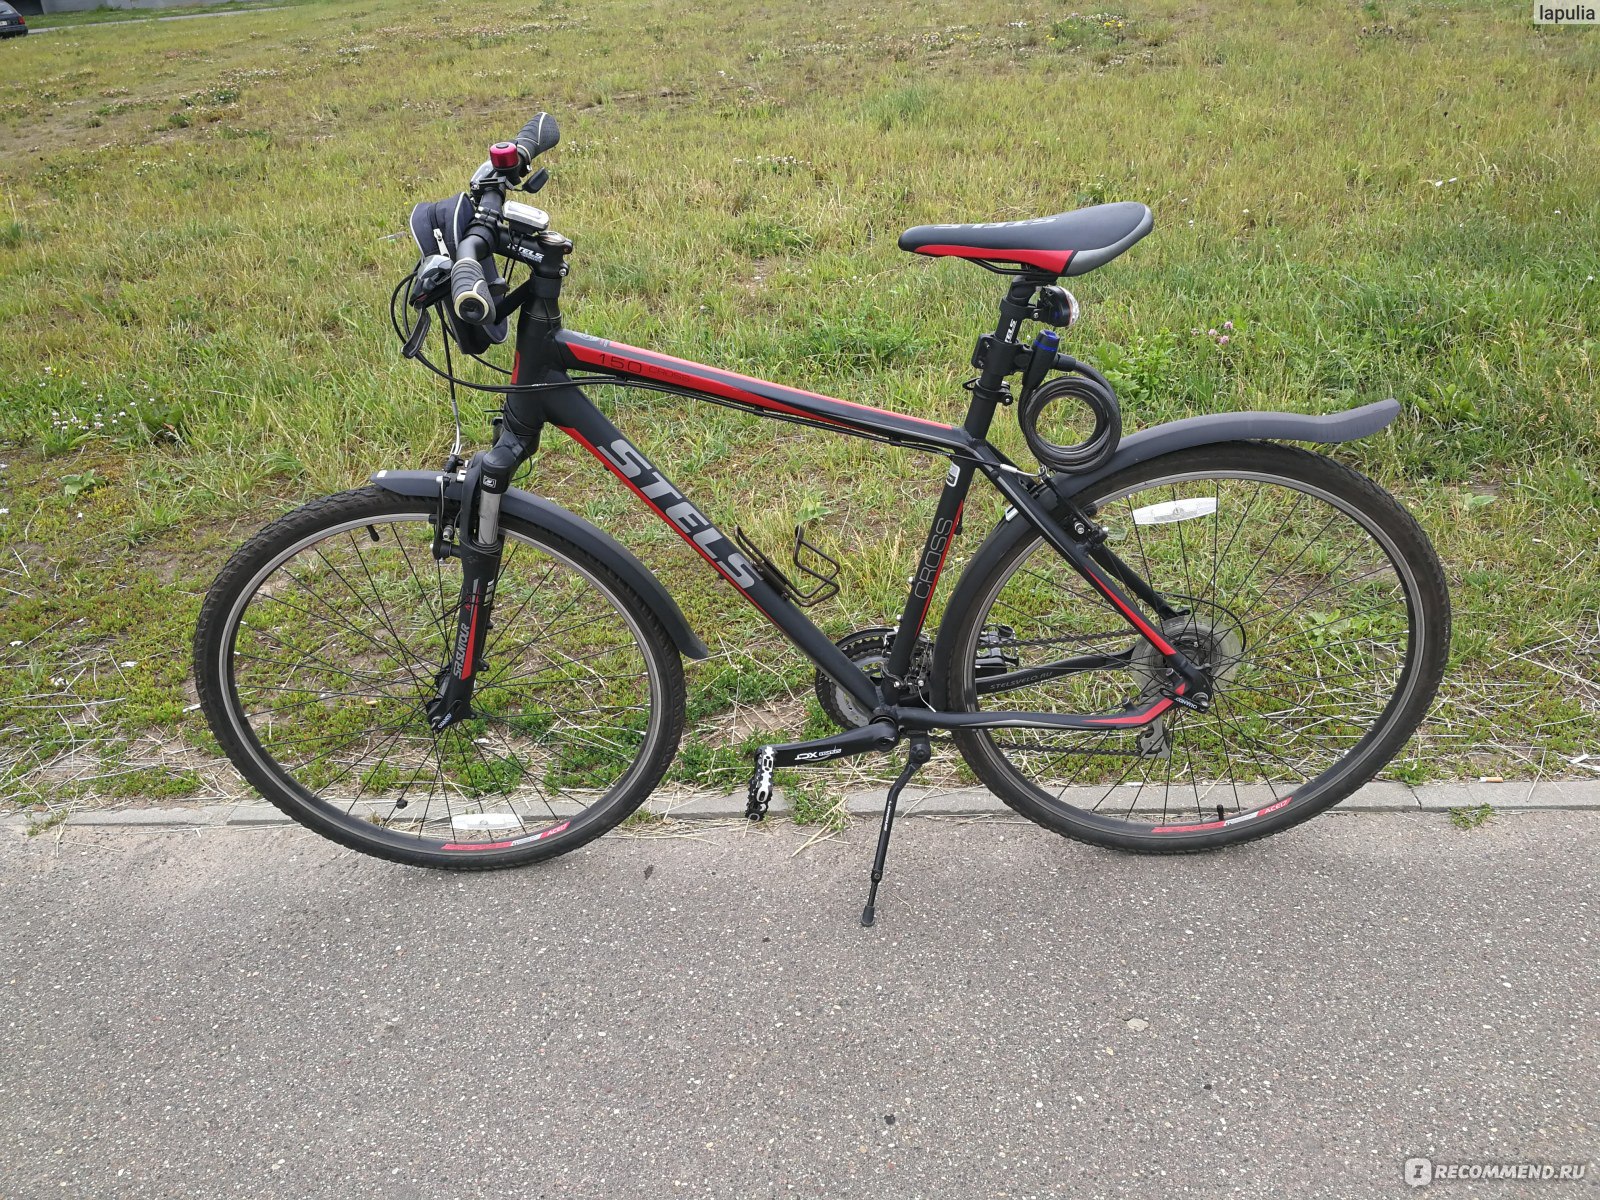 Велосипед мужской 150 кг. Stels Cross 150. Stels 700 Cross 150 (2014). Stels Cross 150 2013. Stels Cross 150 d.